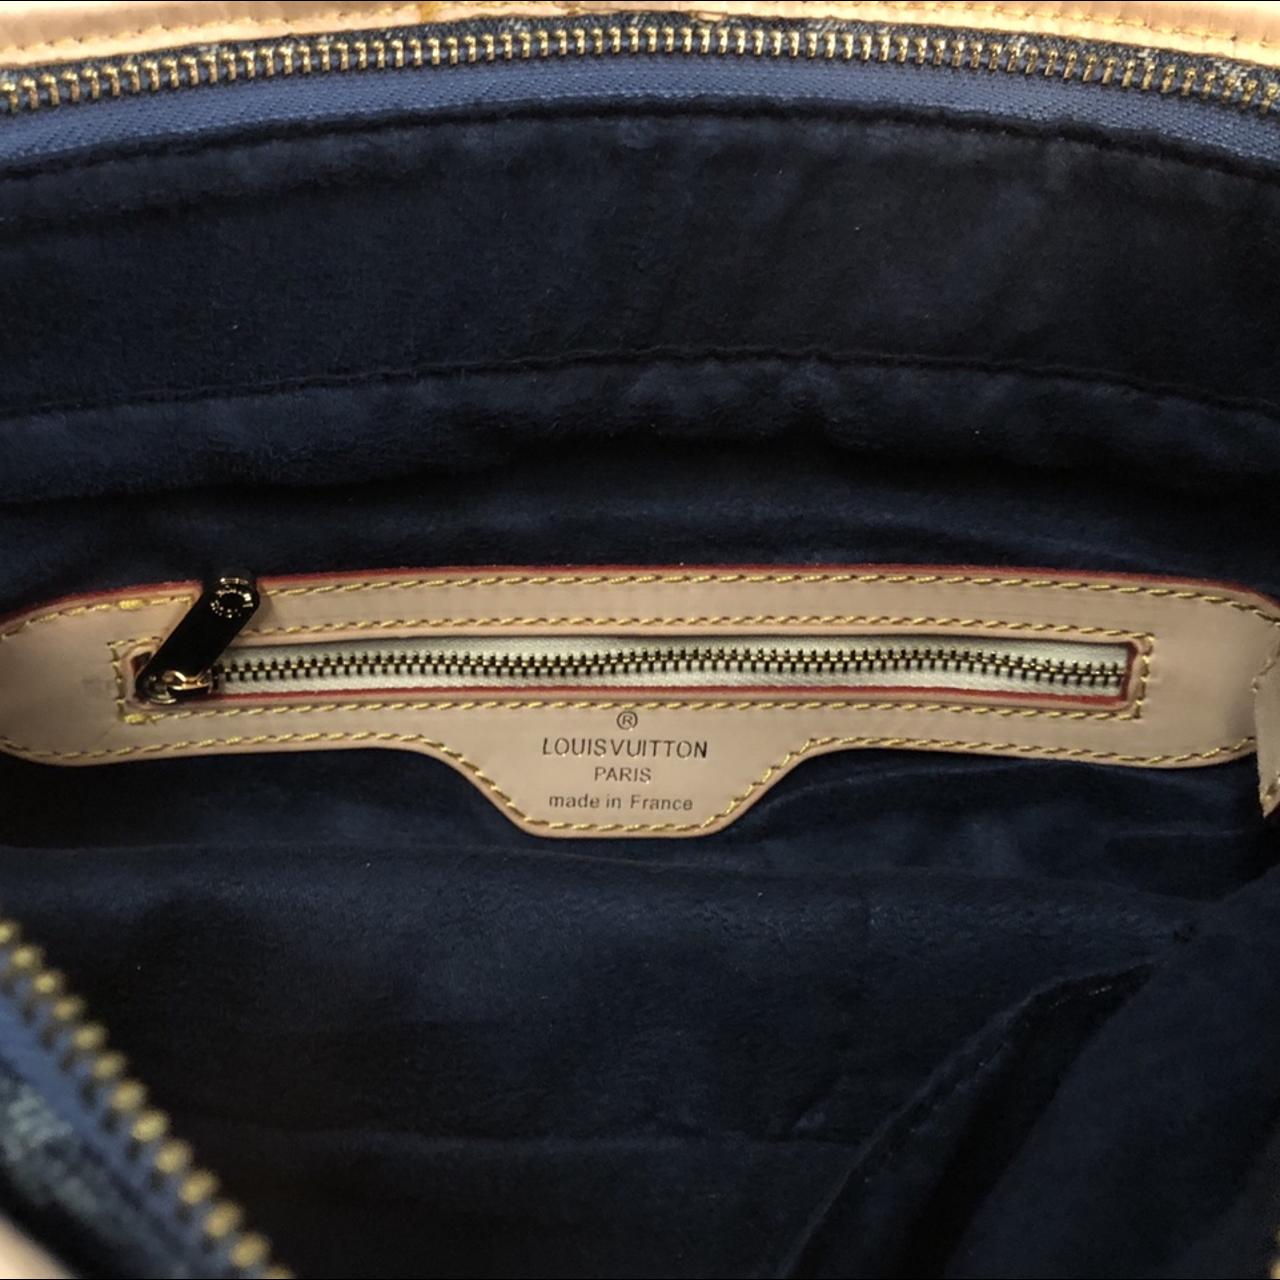 Sunburst handbag Louis Vuitton Multicolour in Denim - 31310868